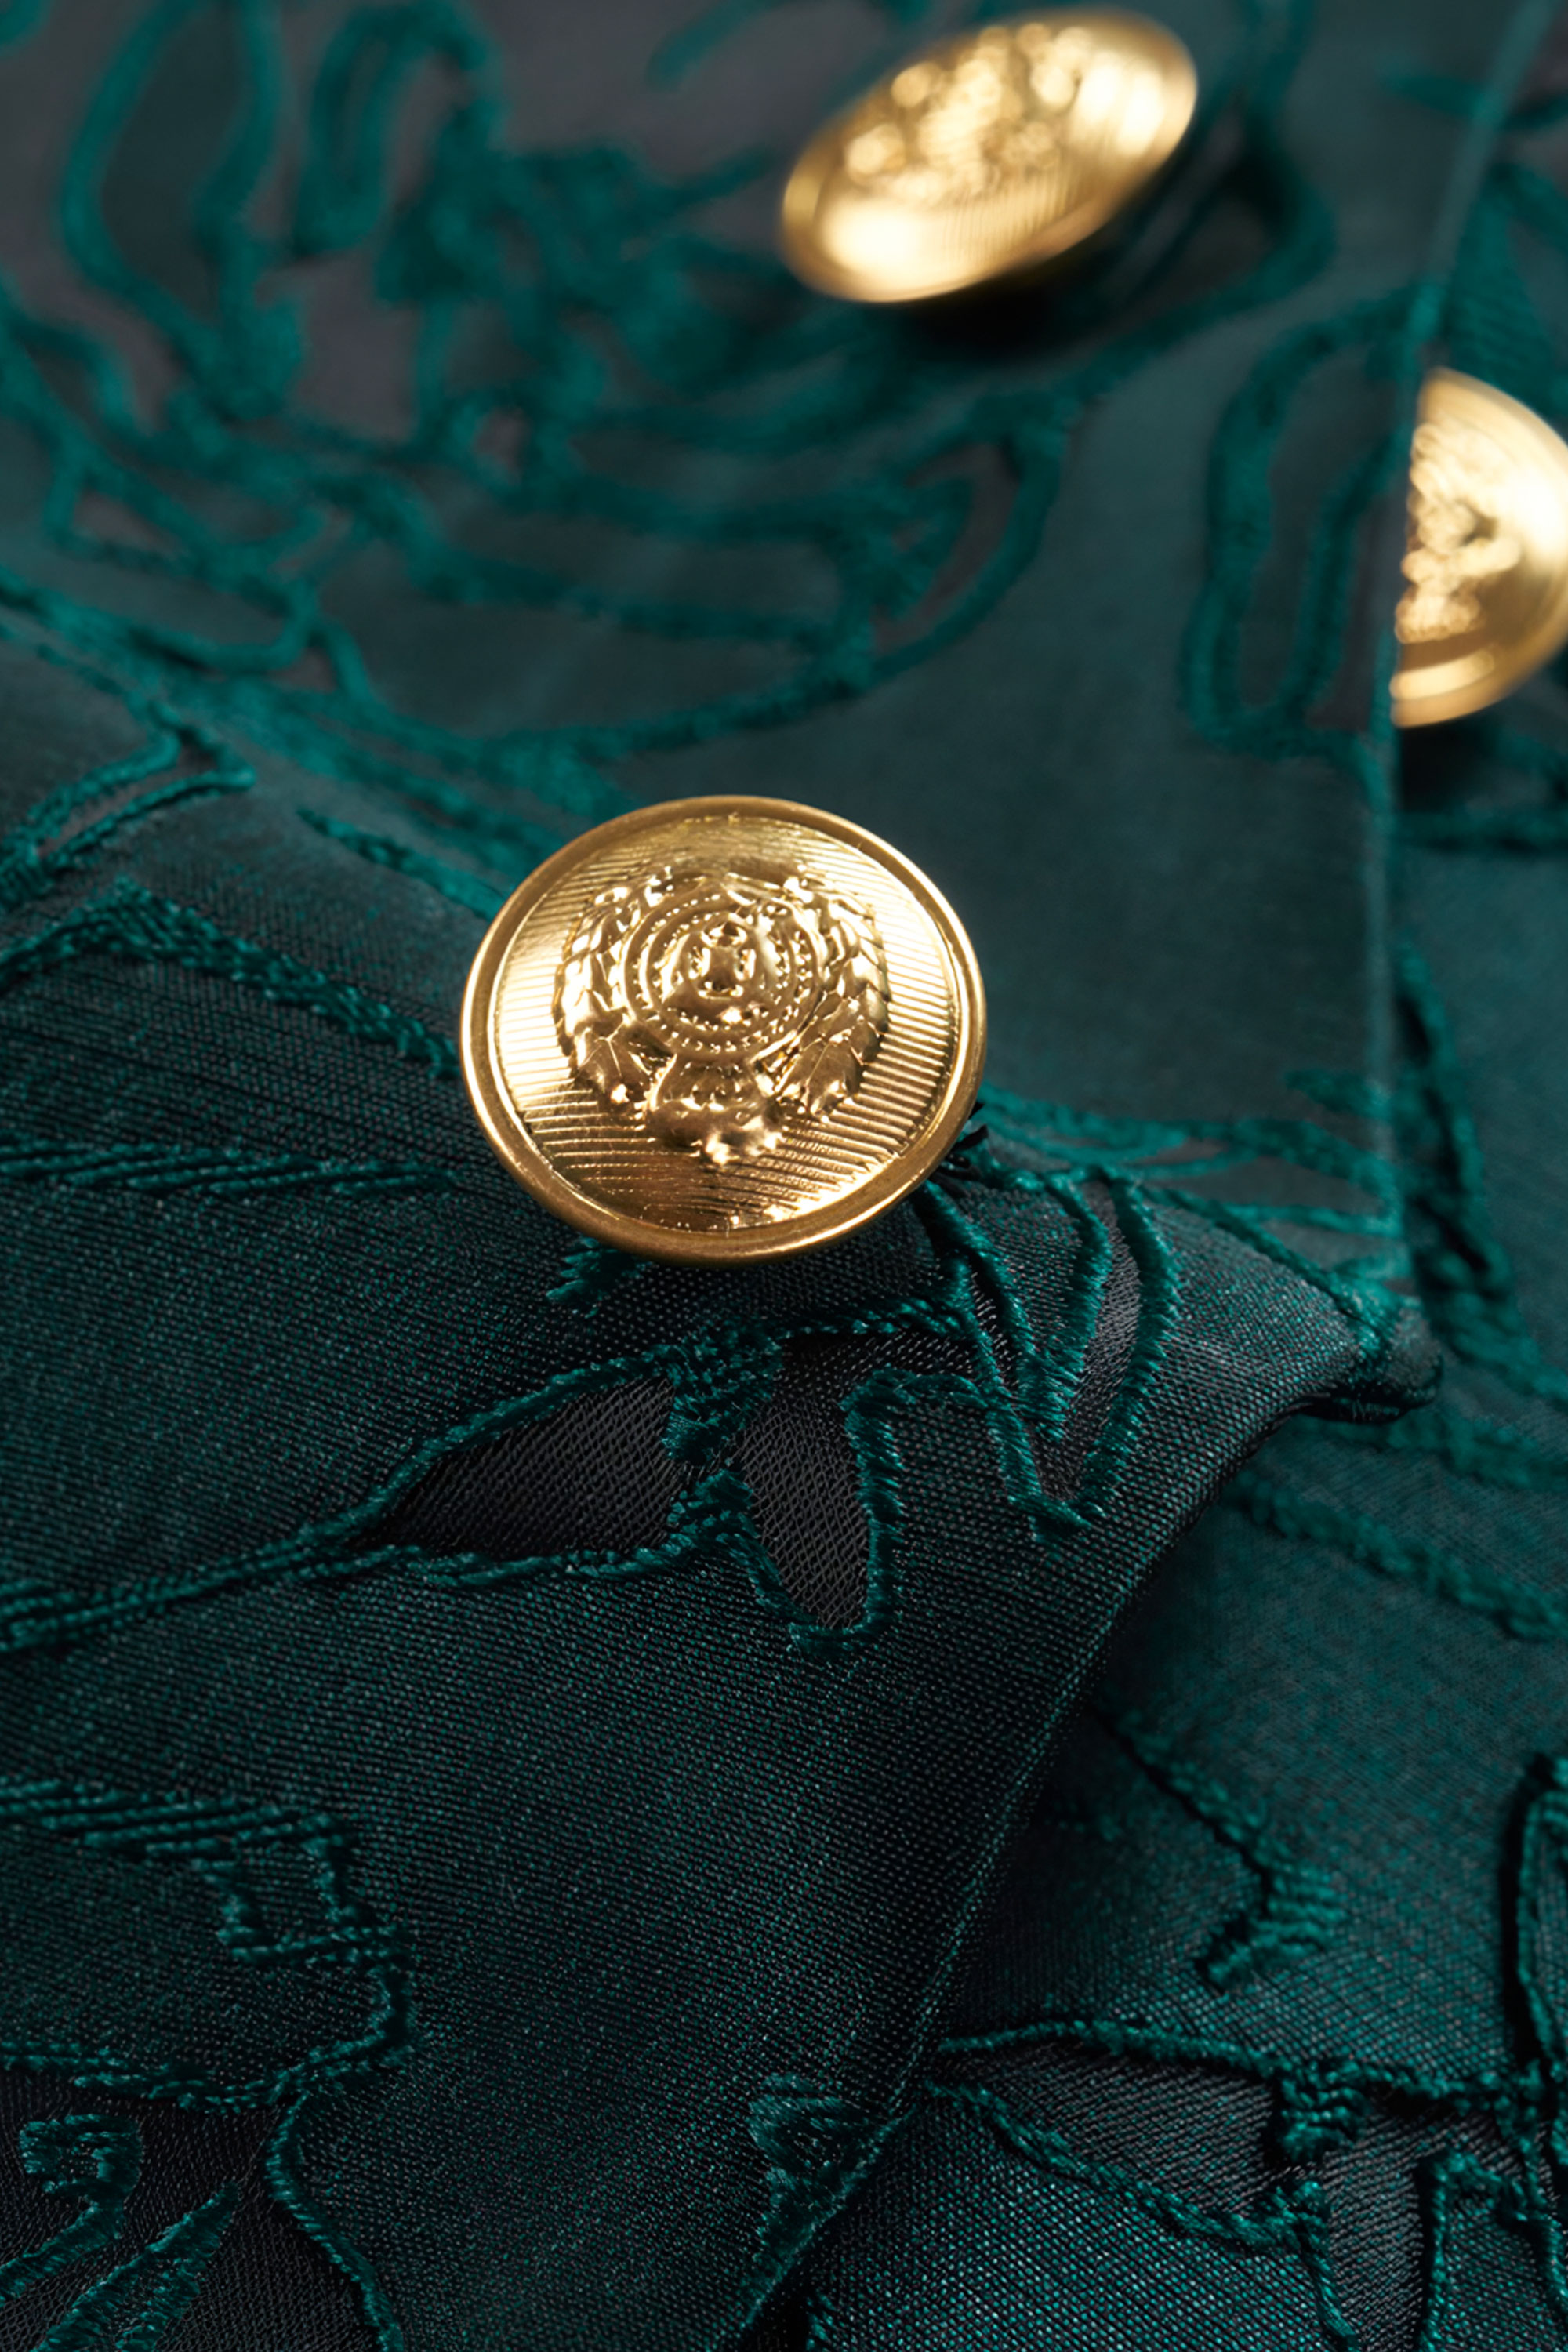 Gold-and-Green-Teal-Tuxedo-Mandarin-Collar-from-Gentlemansguru.com